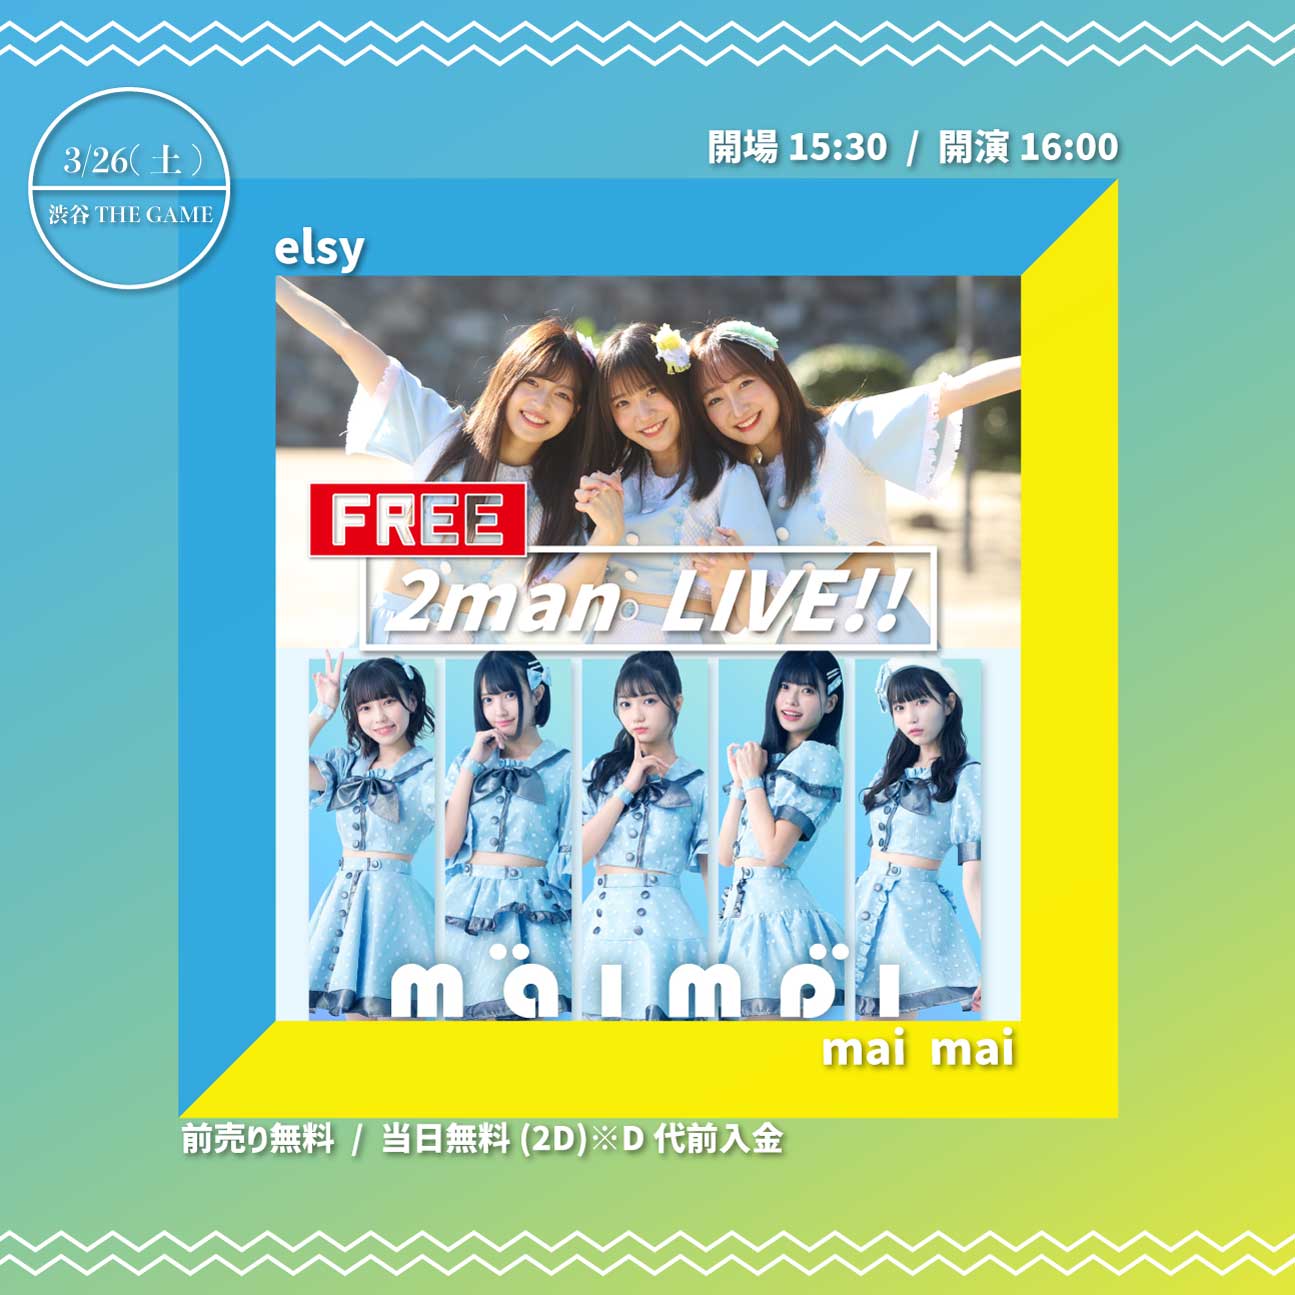 3/26(土) elsy × mai mai  -Free 2man Live-